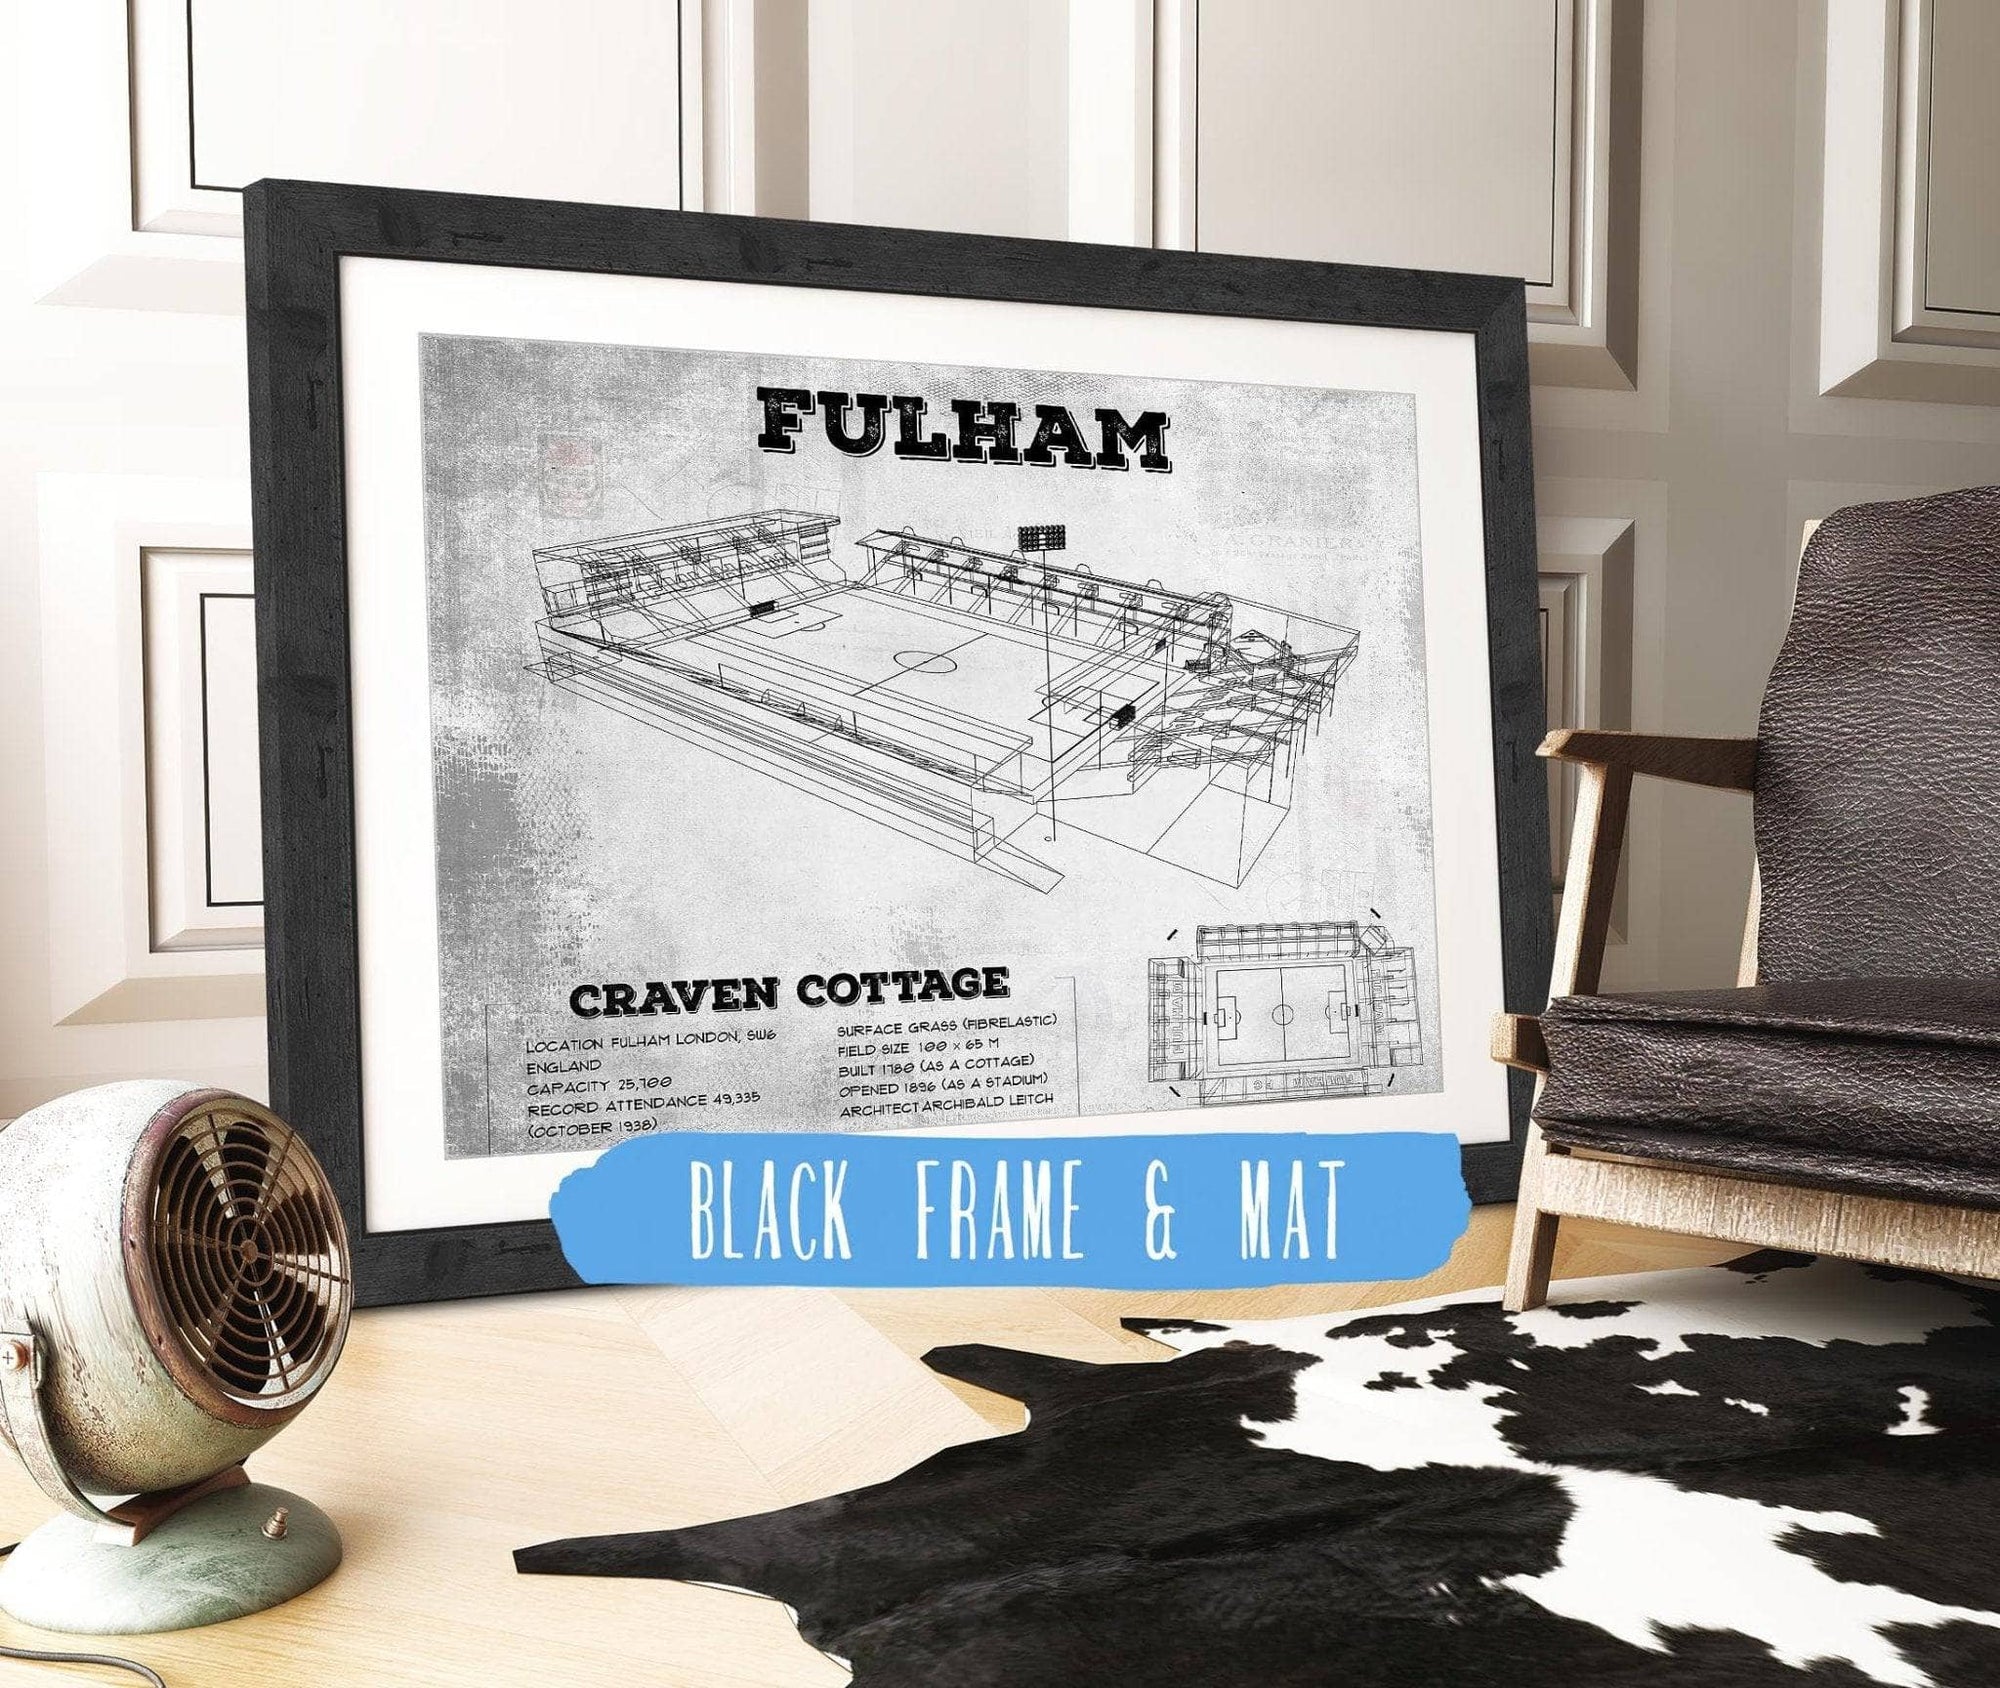 Cutler West Soccer Collection 14" x 11" / Black Frame & Mat Fulham Football Club Craven Cottage Vintage Soccer Print 737087842_66707